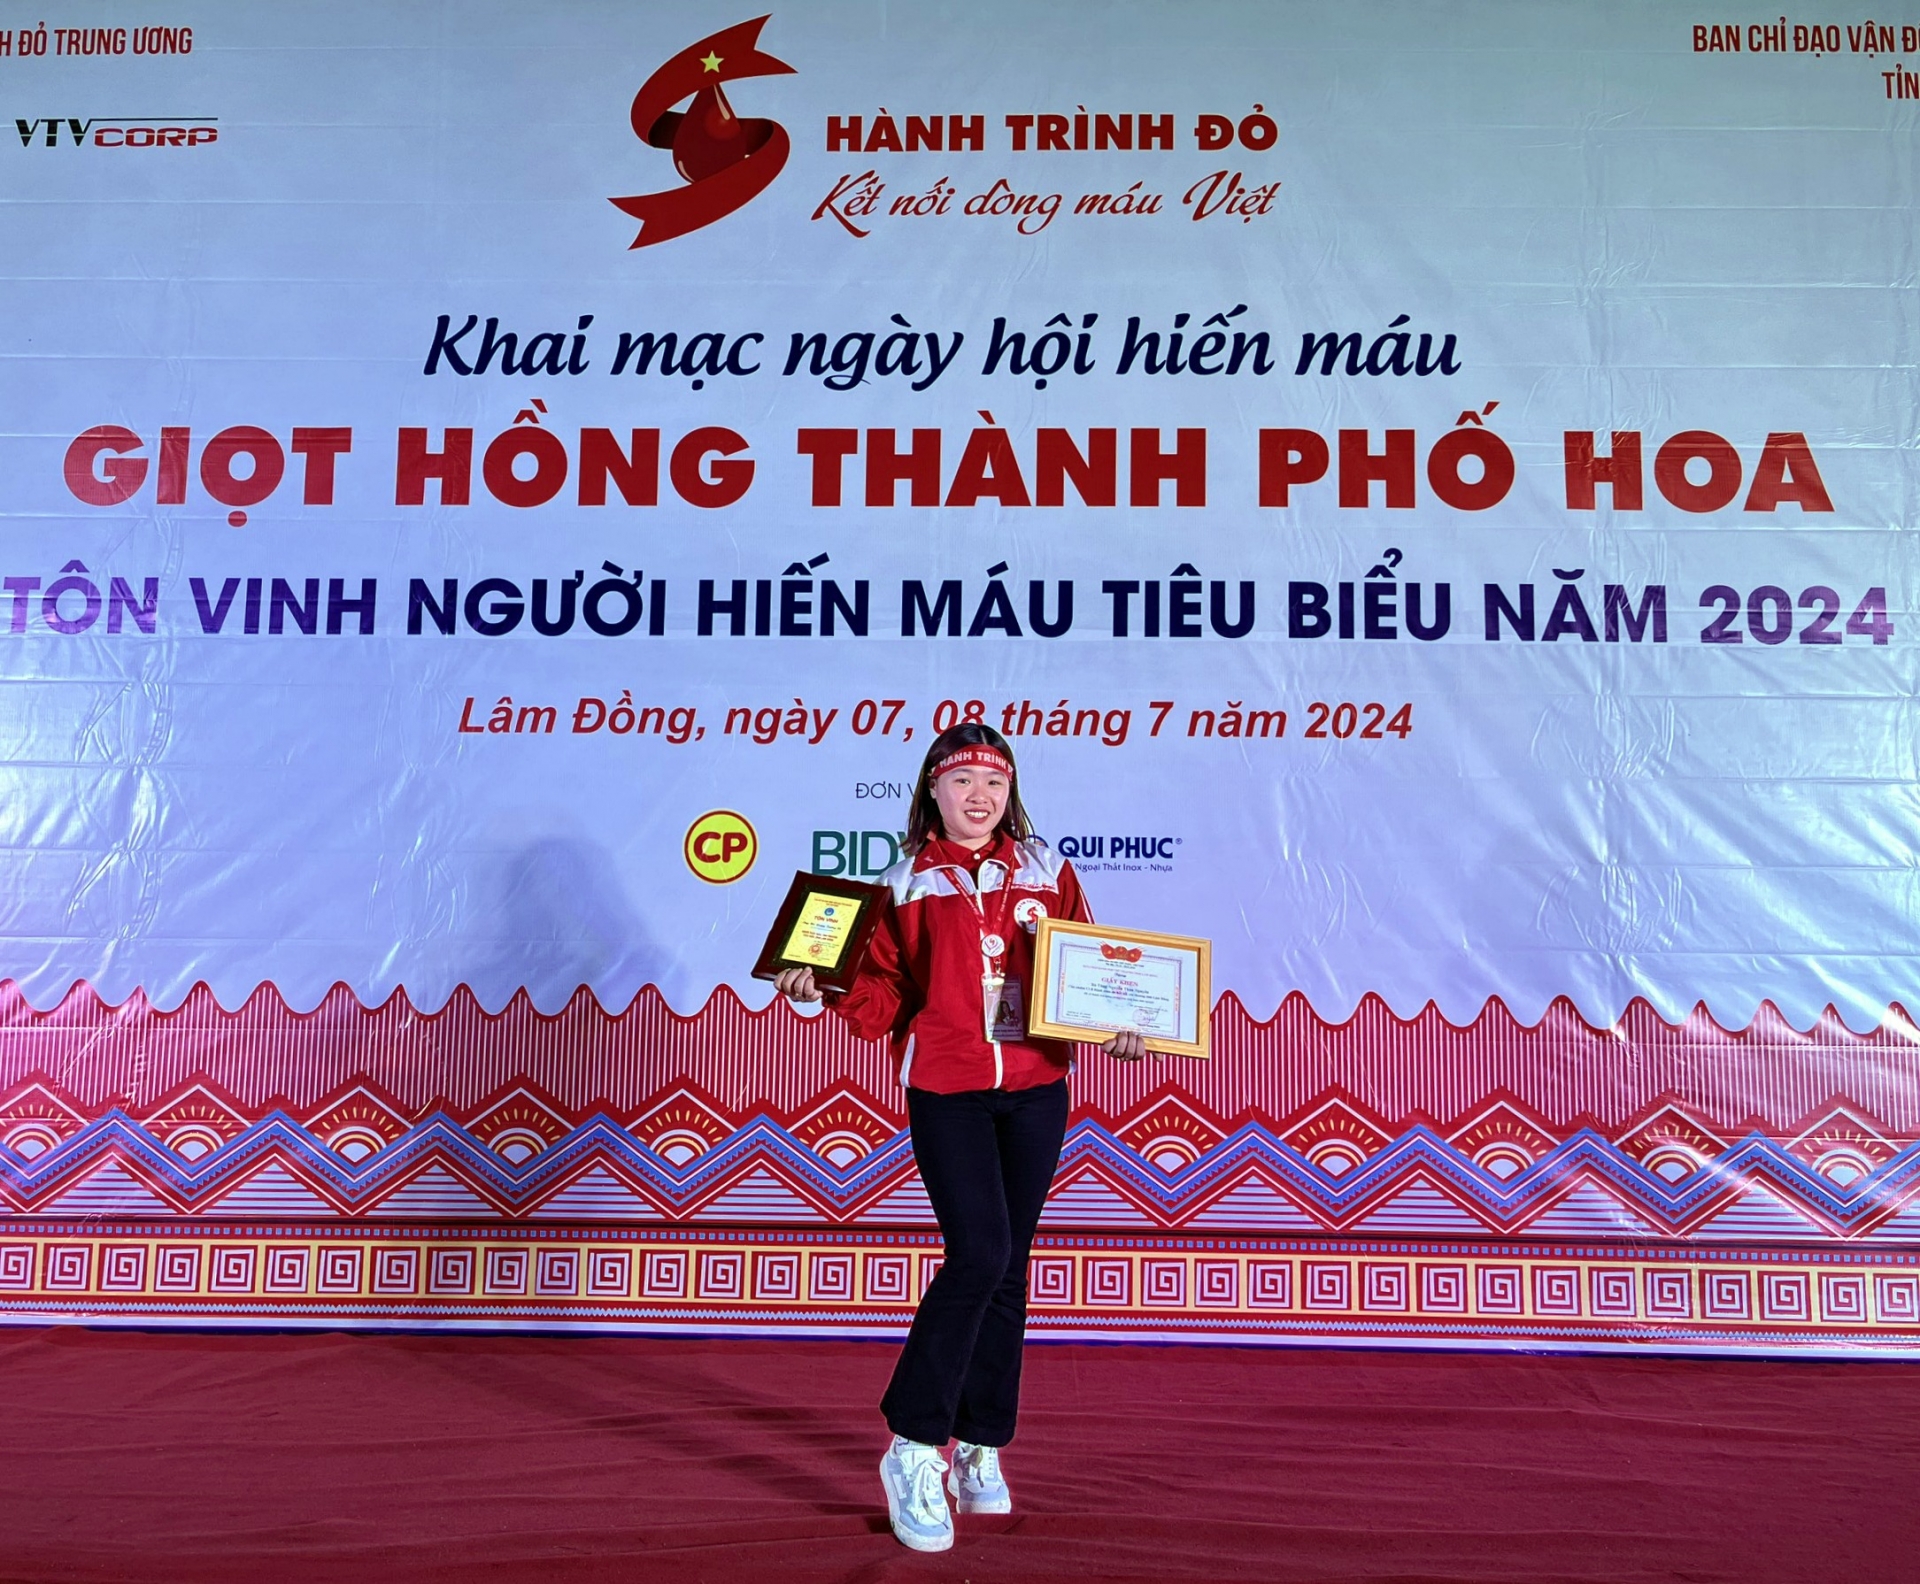 Thủ lĩnh CLB Hành trình đỏ, chị Tăng Nguyễn Thảo Nguyên –Chủ nhiệm CLB Hành trình đỏ -Kết nối yêu thương tỉnh Lâm Đồng được tôn vinh 